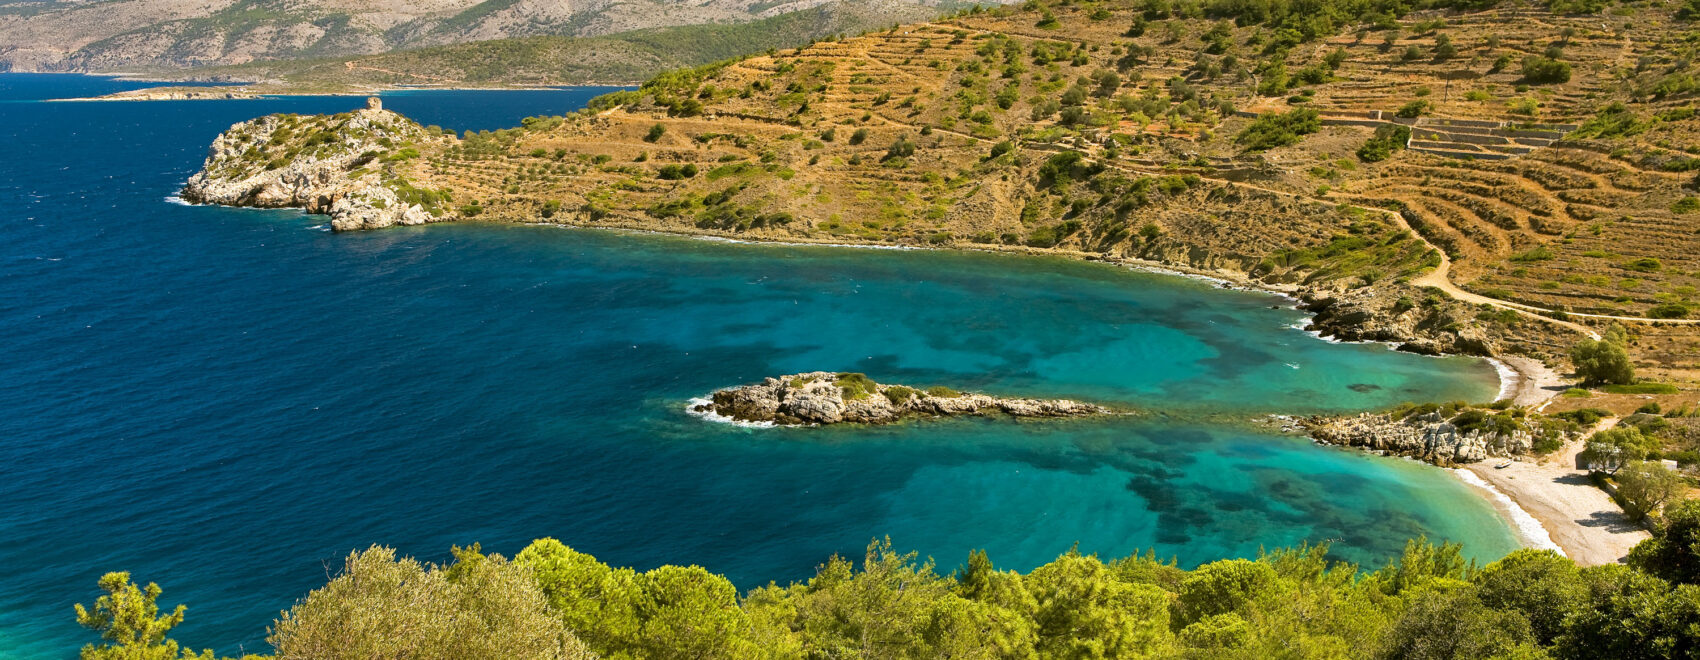 Isola di Chios